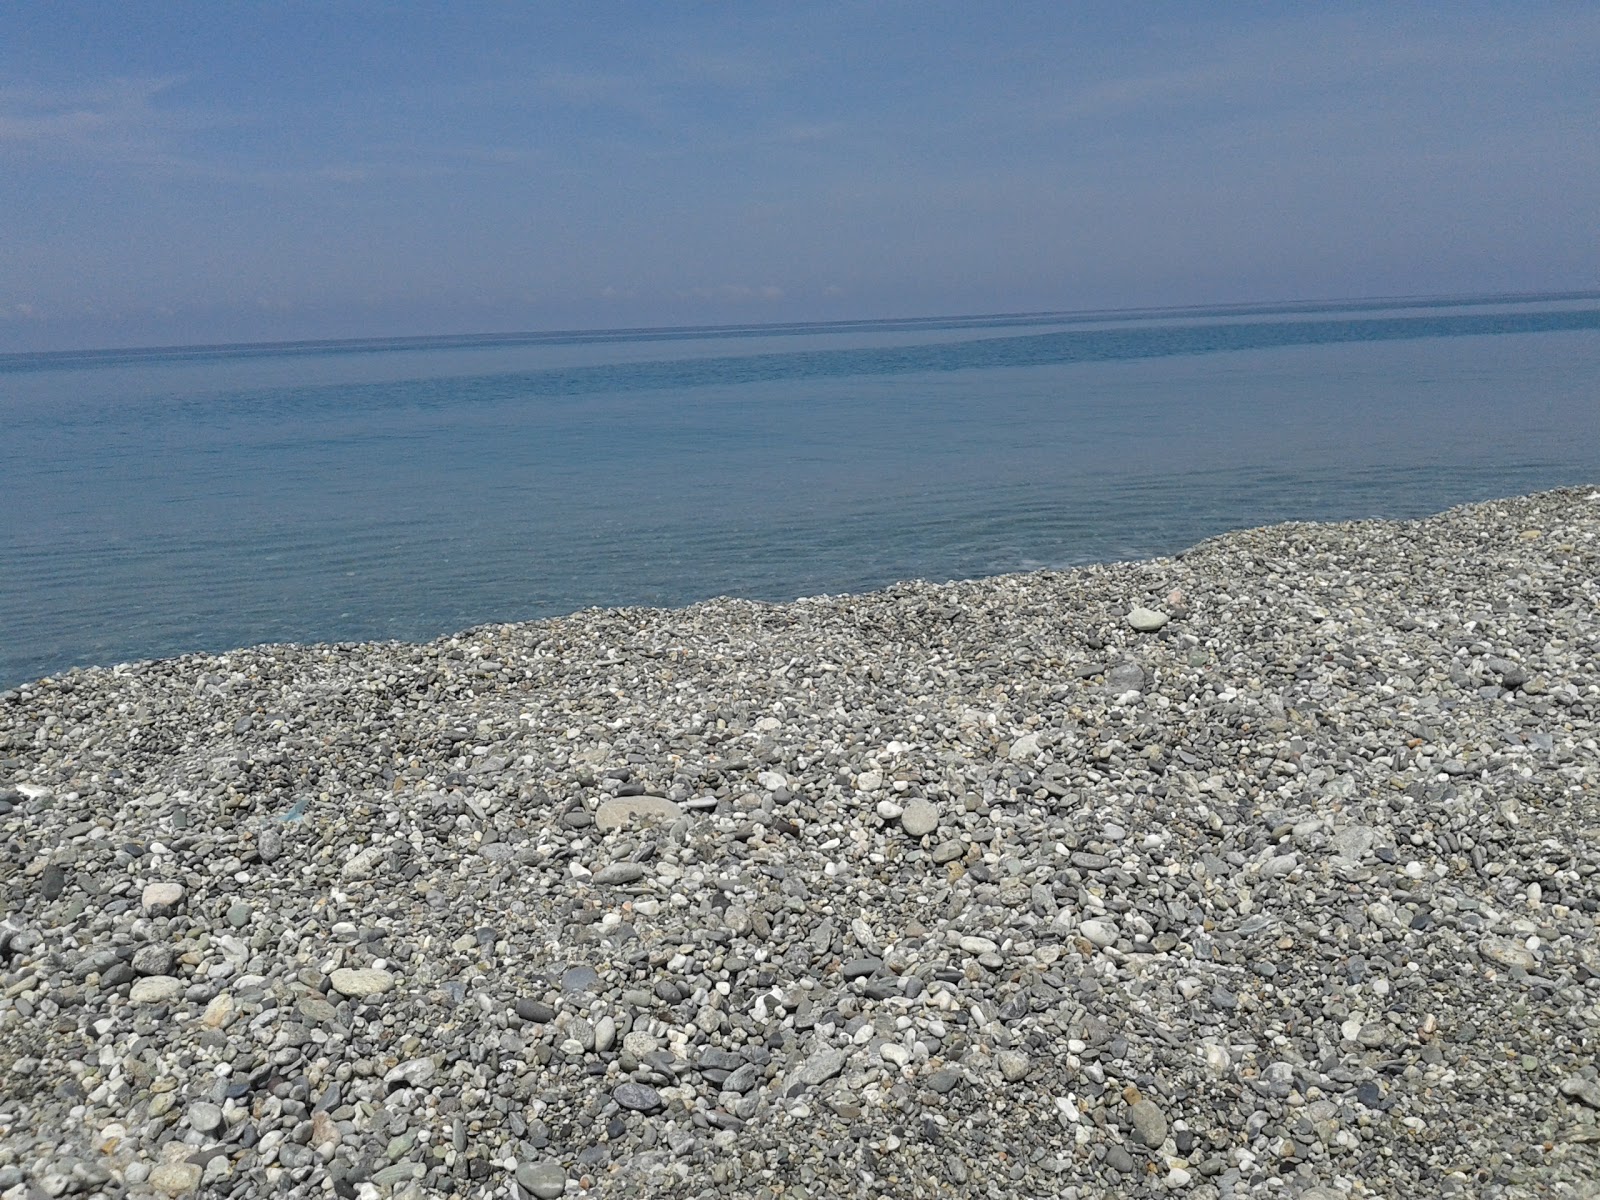 Foto von Scaro-Reggio-Scornavacca-Vardano beach mit blaues wasser Oberfläche